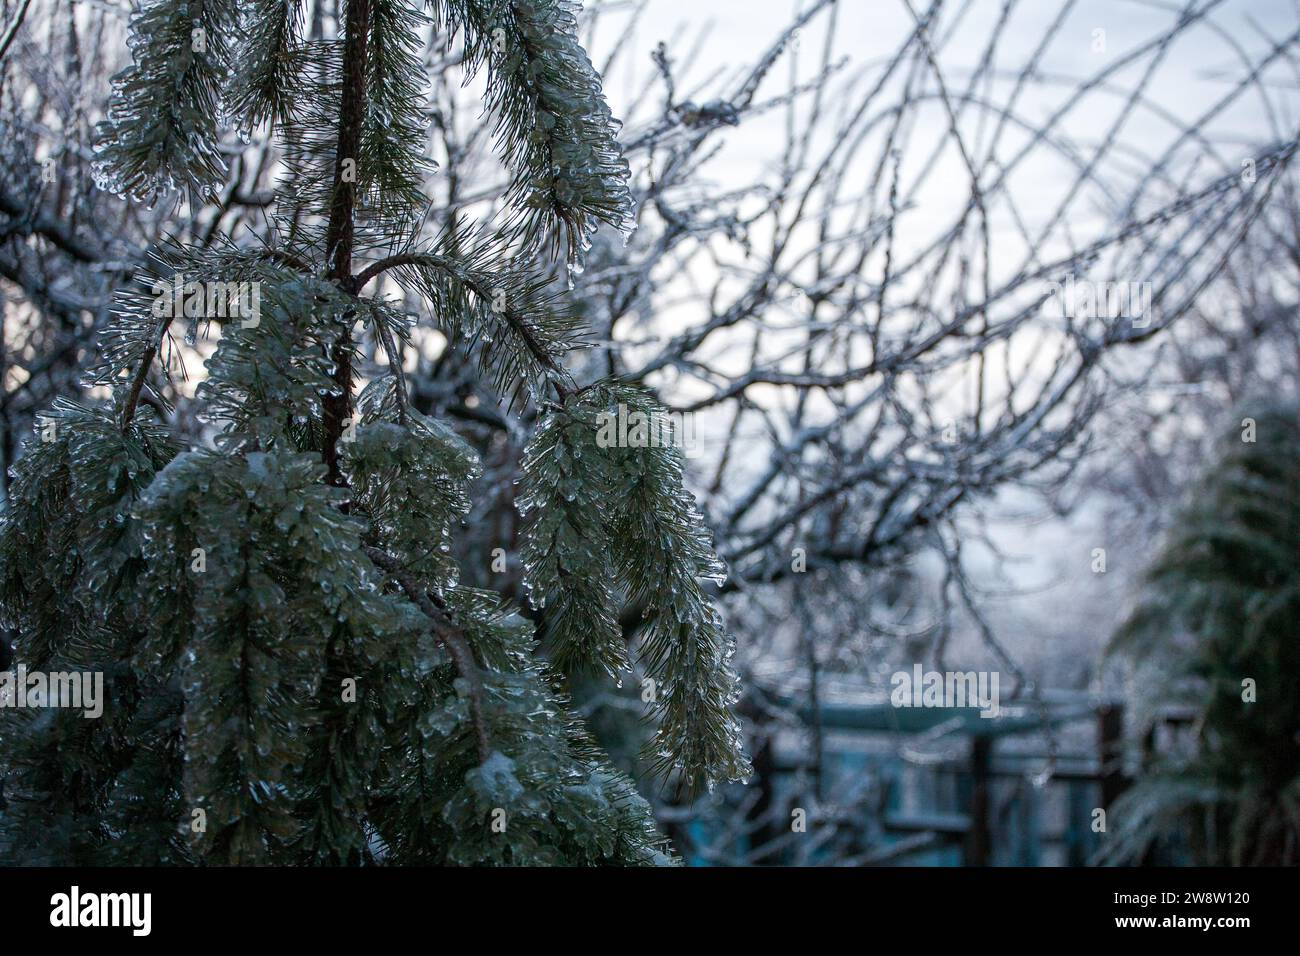 Glassa nel mondo delle diramazioni con lunghi aghi verdi ricoperti da un sottile strato di ghiaccio in una giornata invernale. Foto Stock